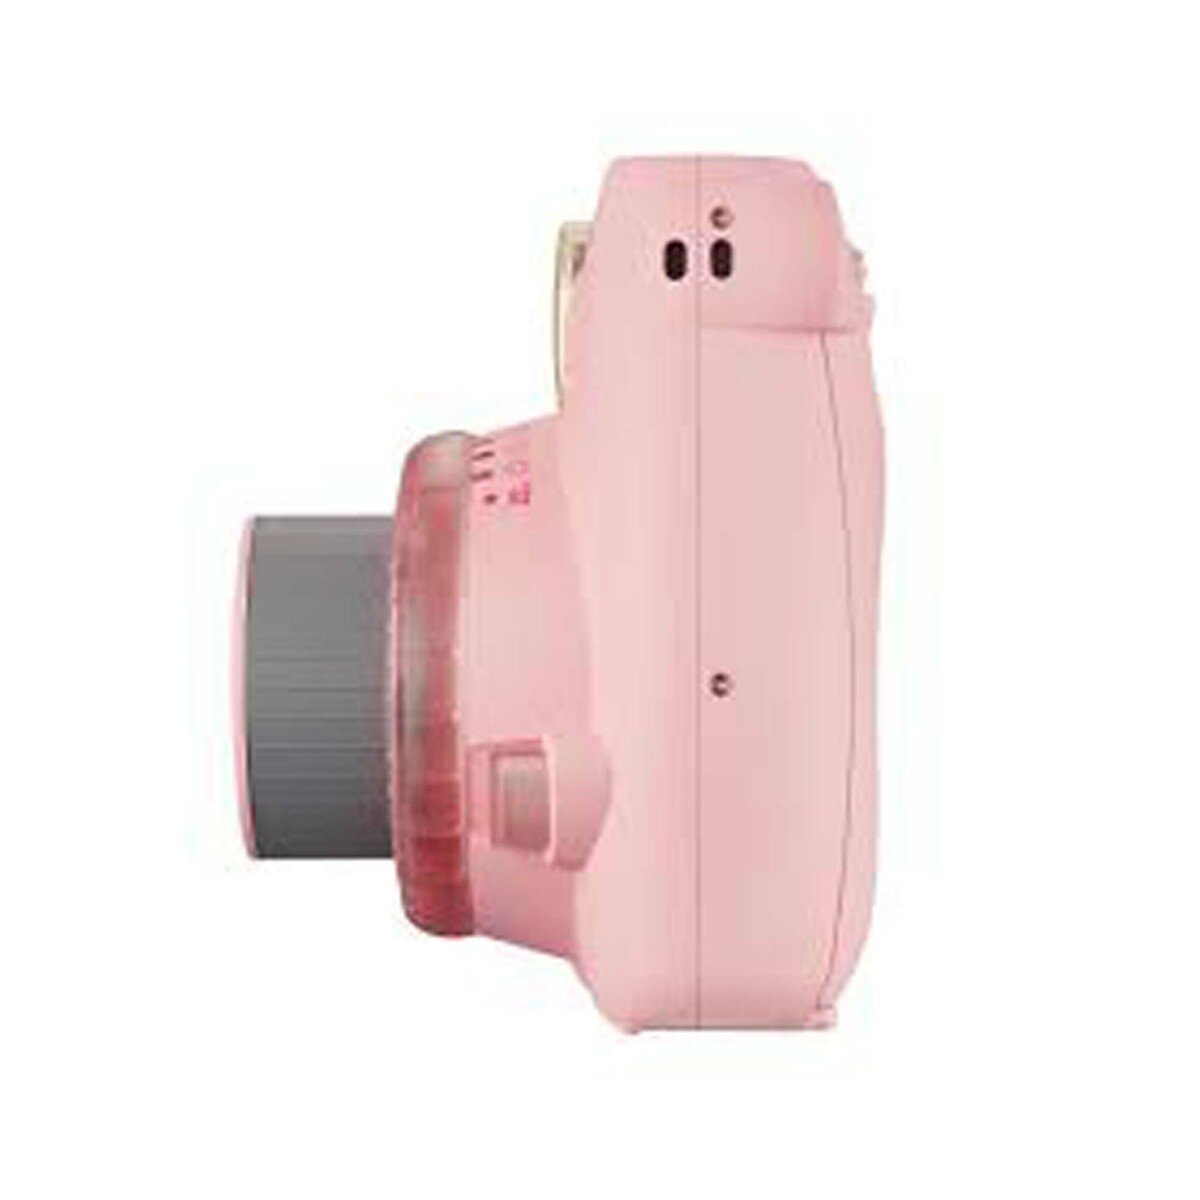 Fujifilm Instax Camera Mini 9 Clear Pink